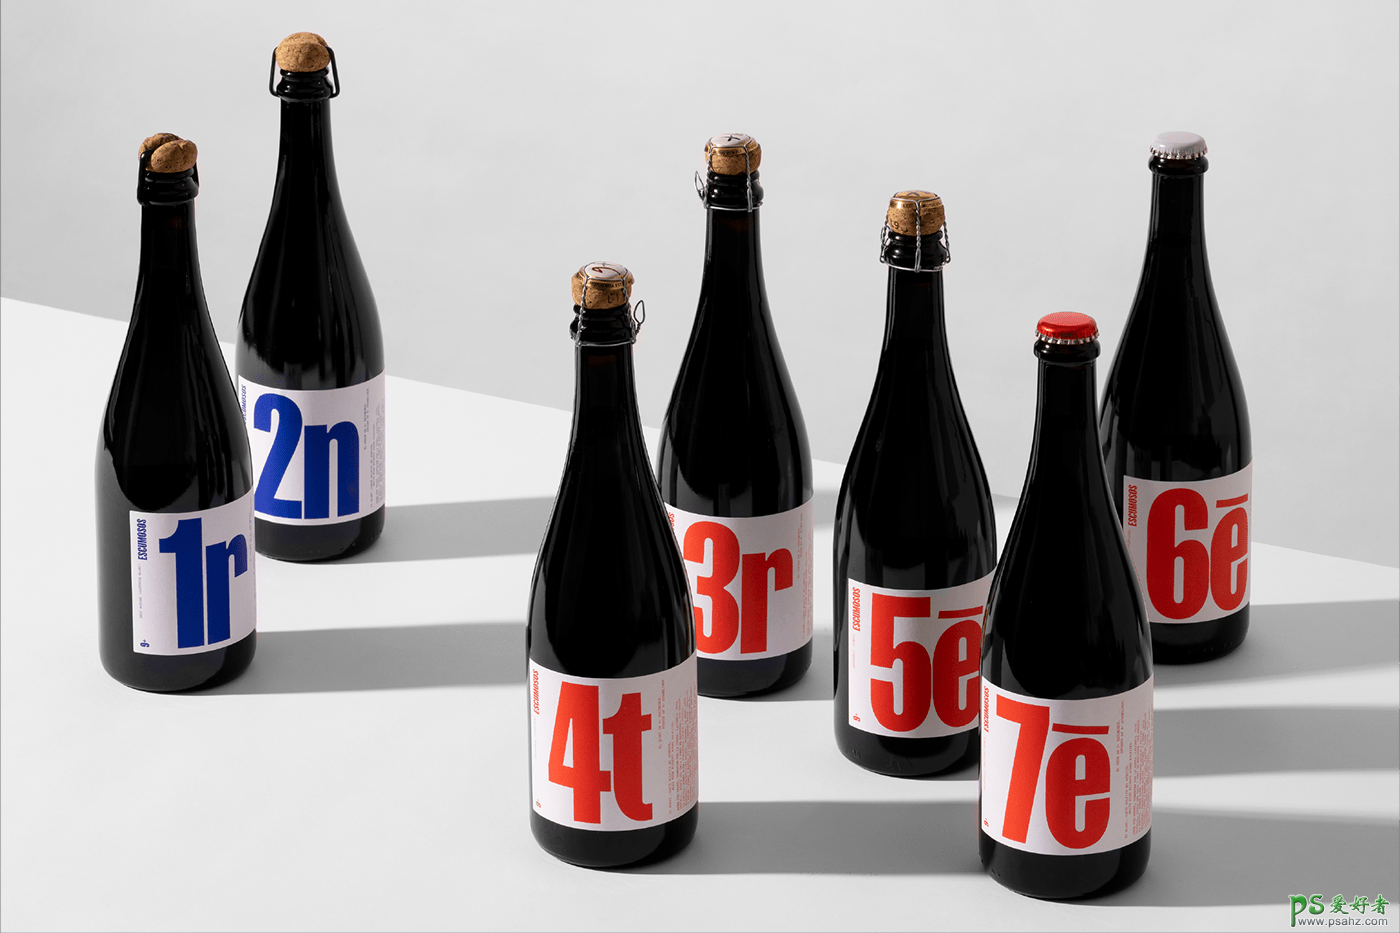 欣赏一组高端葡萄酒品牌包装设计作品。